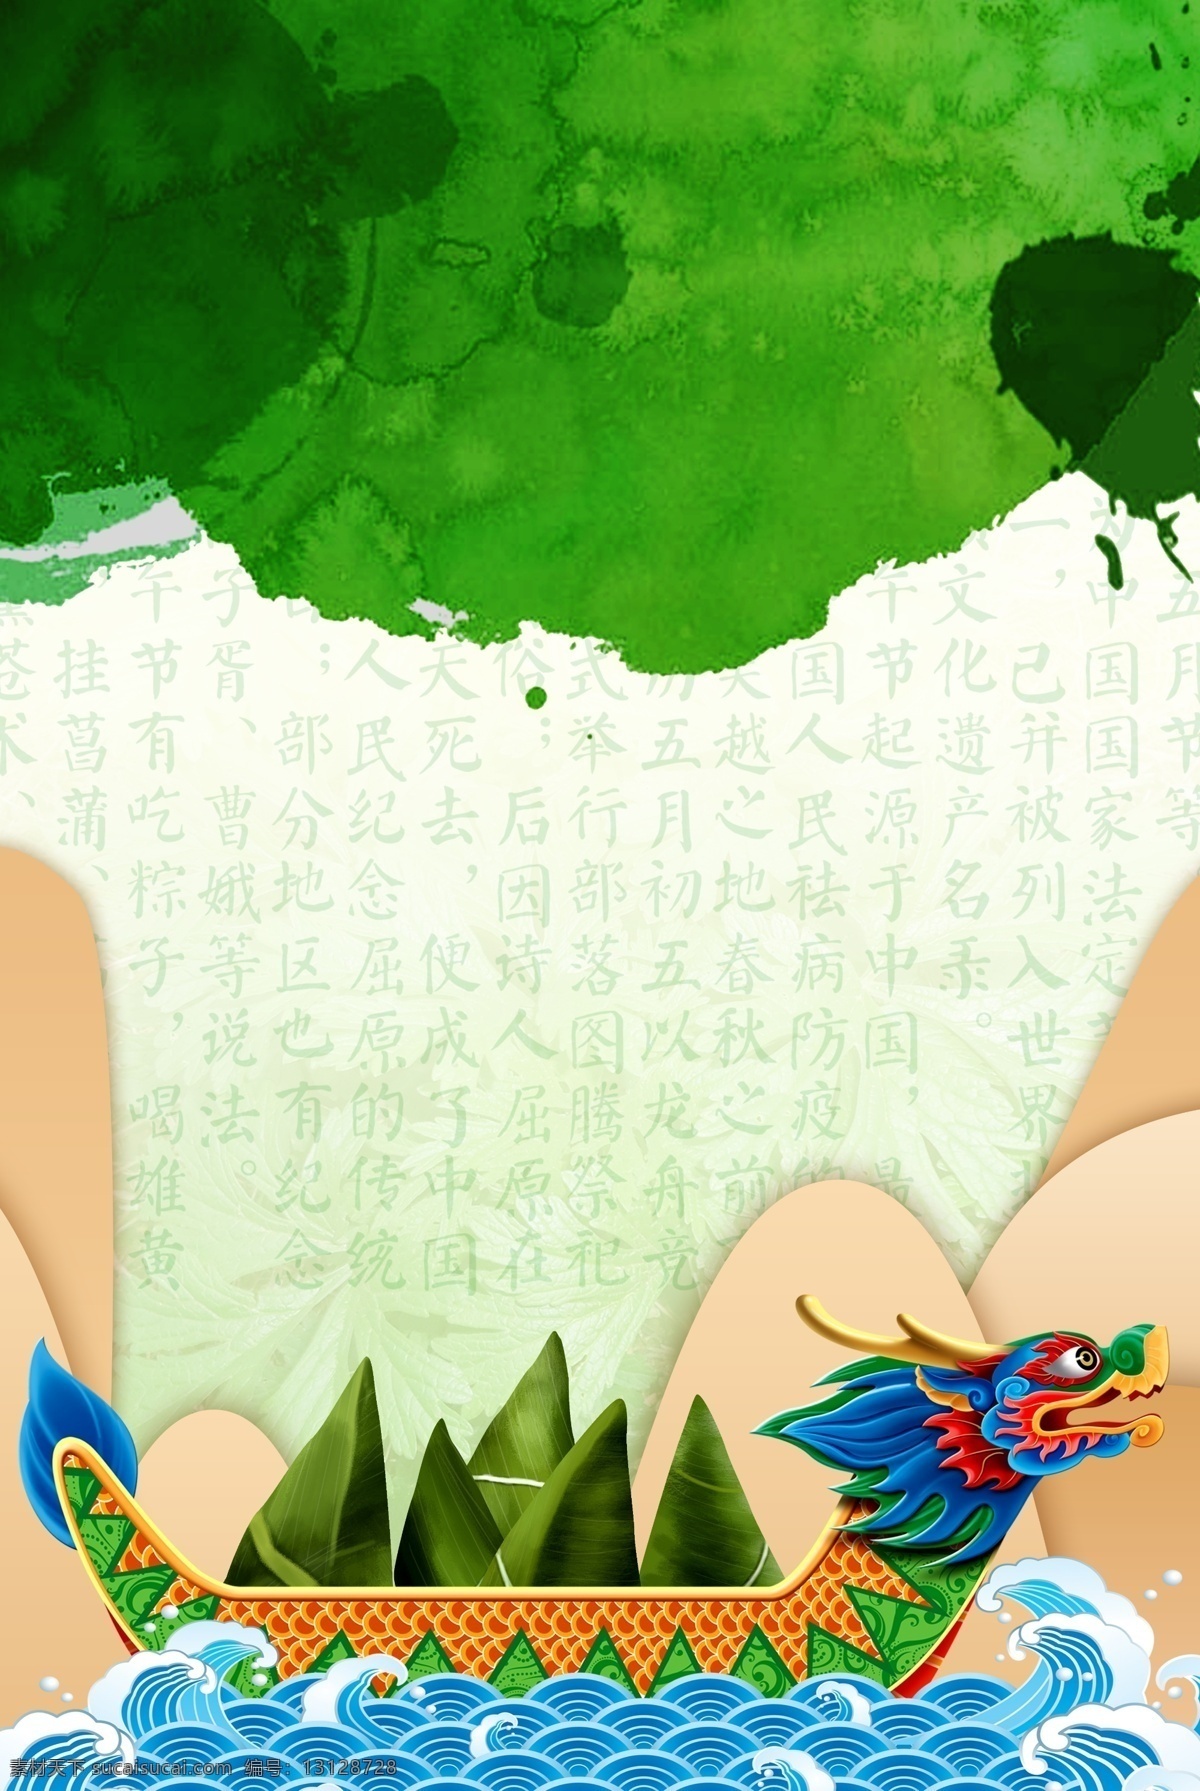 端午节 绿色 粽子 海报 中国风 传统文化 传统佳节 宣传 广告 背景